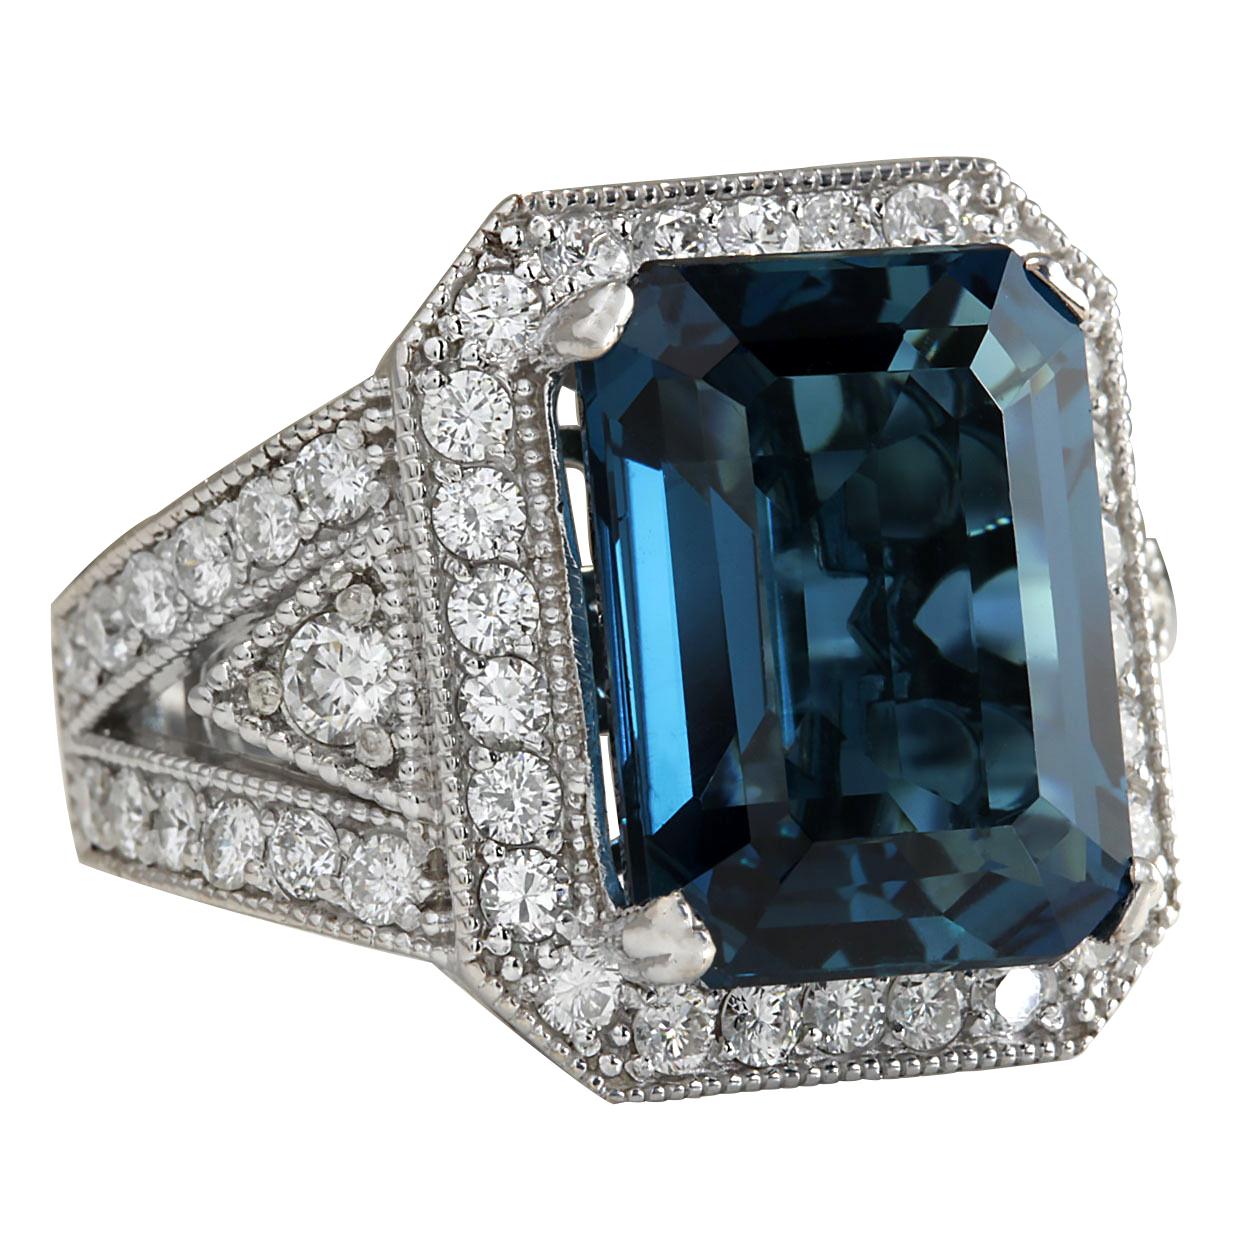 15.51 Carat Natural Topaz 14 Karat White Gold Diamond Ring
Stamped: 14K White Gold
Total Ring Weight: 13.0 Grams
Total Natural Topaz Weight is 13.71 Carat (Measures: 16.00x12.00mm)
Color: London Blue
Total Natural Diamond Weight is 1.80